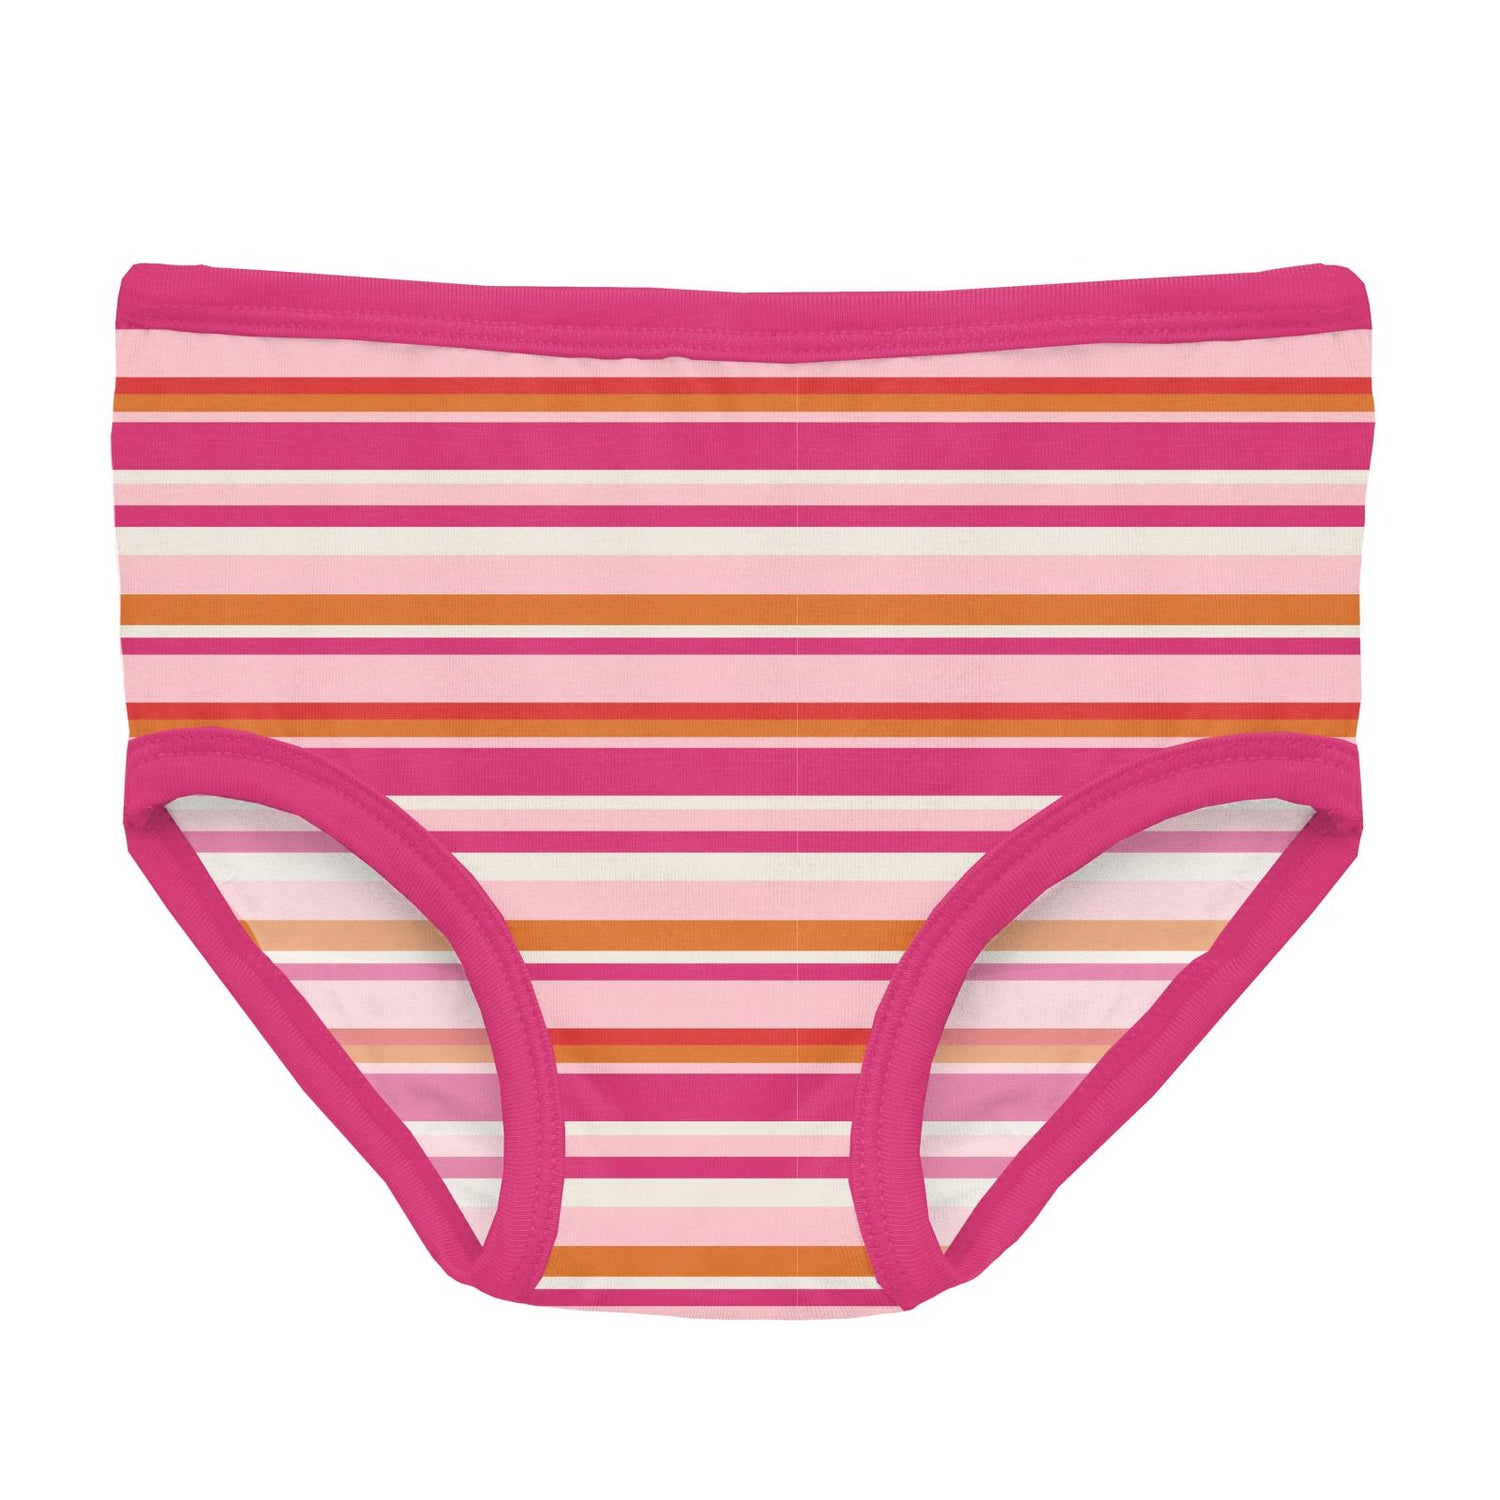 Print Girl's Underwear in Anniversary Sunset Stripe